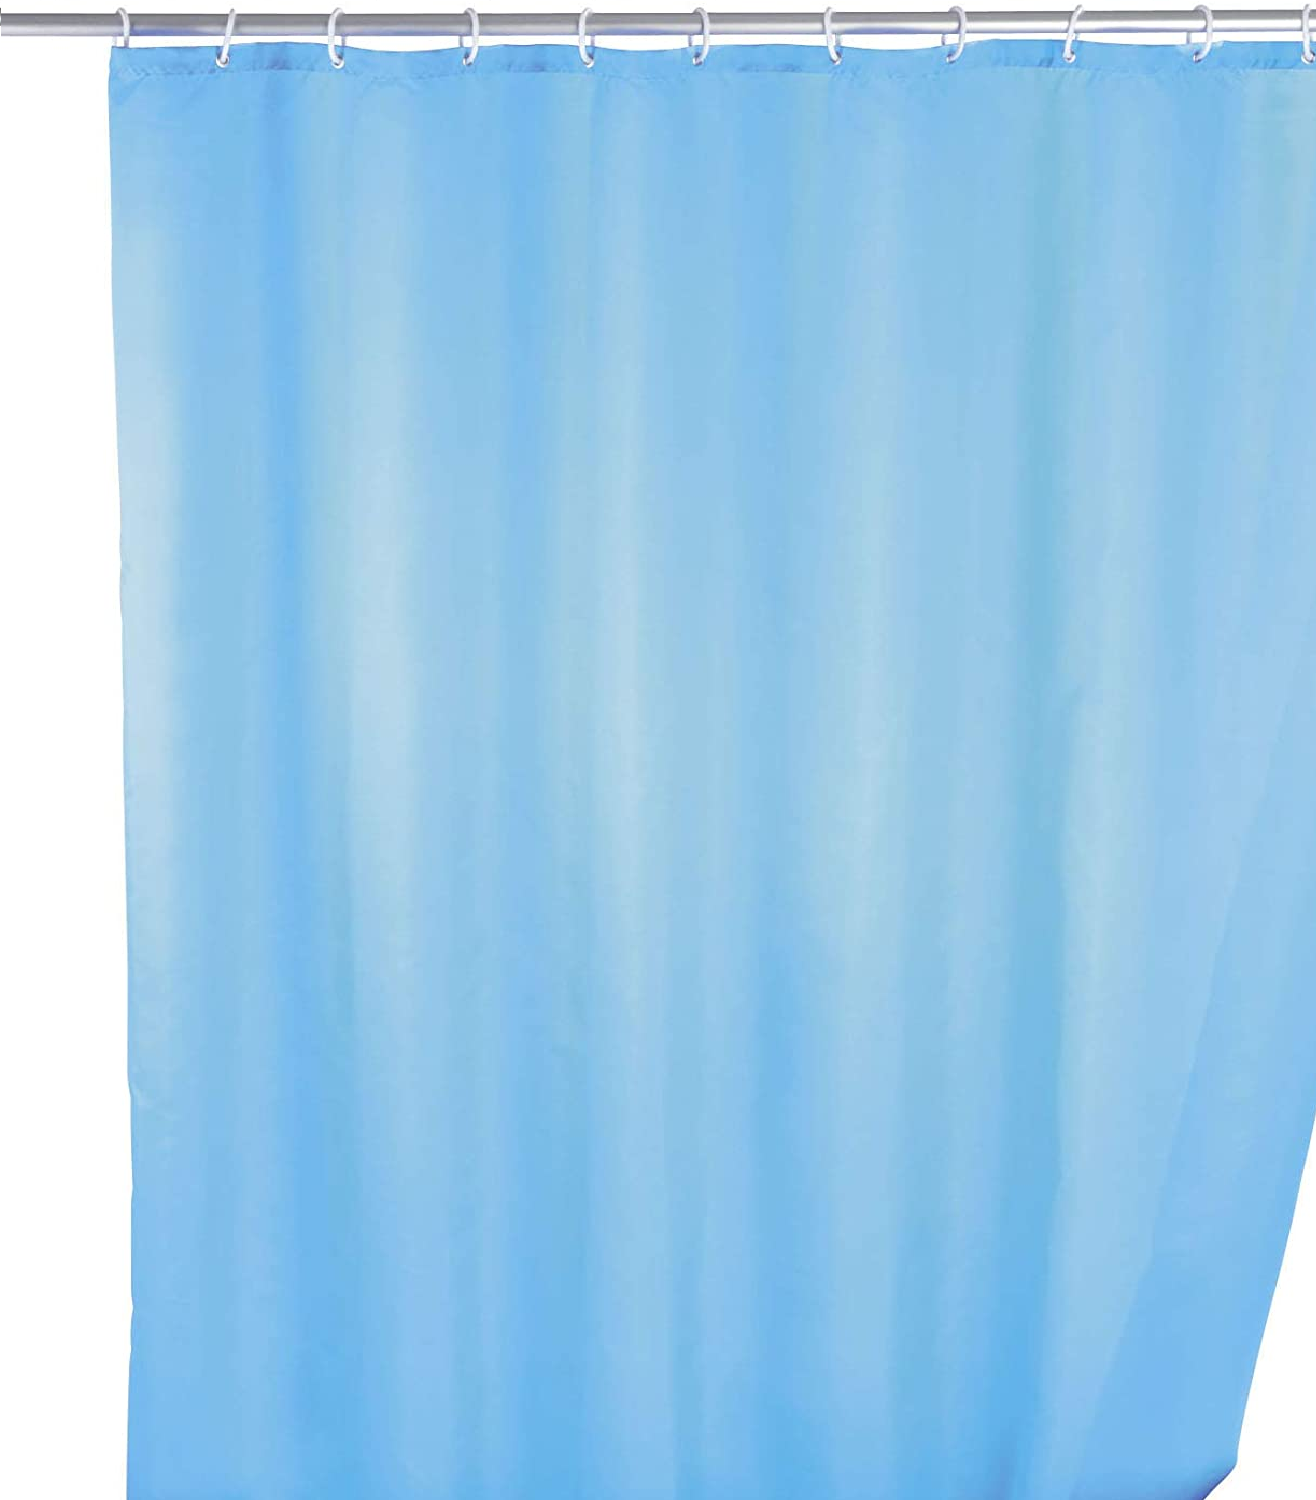 Anti-Schimmel Duschvorhang Uni Light Blue - Anti-Bakteriell, Textil, waschbar, wasserabweisend, schimmelresistent, mit 12 Duschvorhangringen, Polyester, 180 x 200 cm, Hellblau